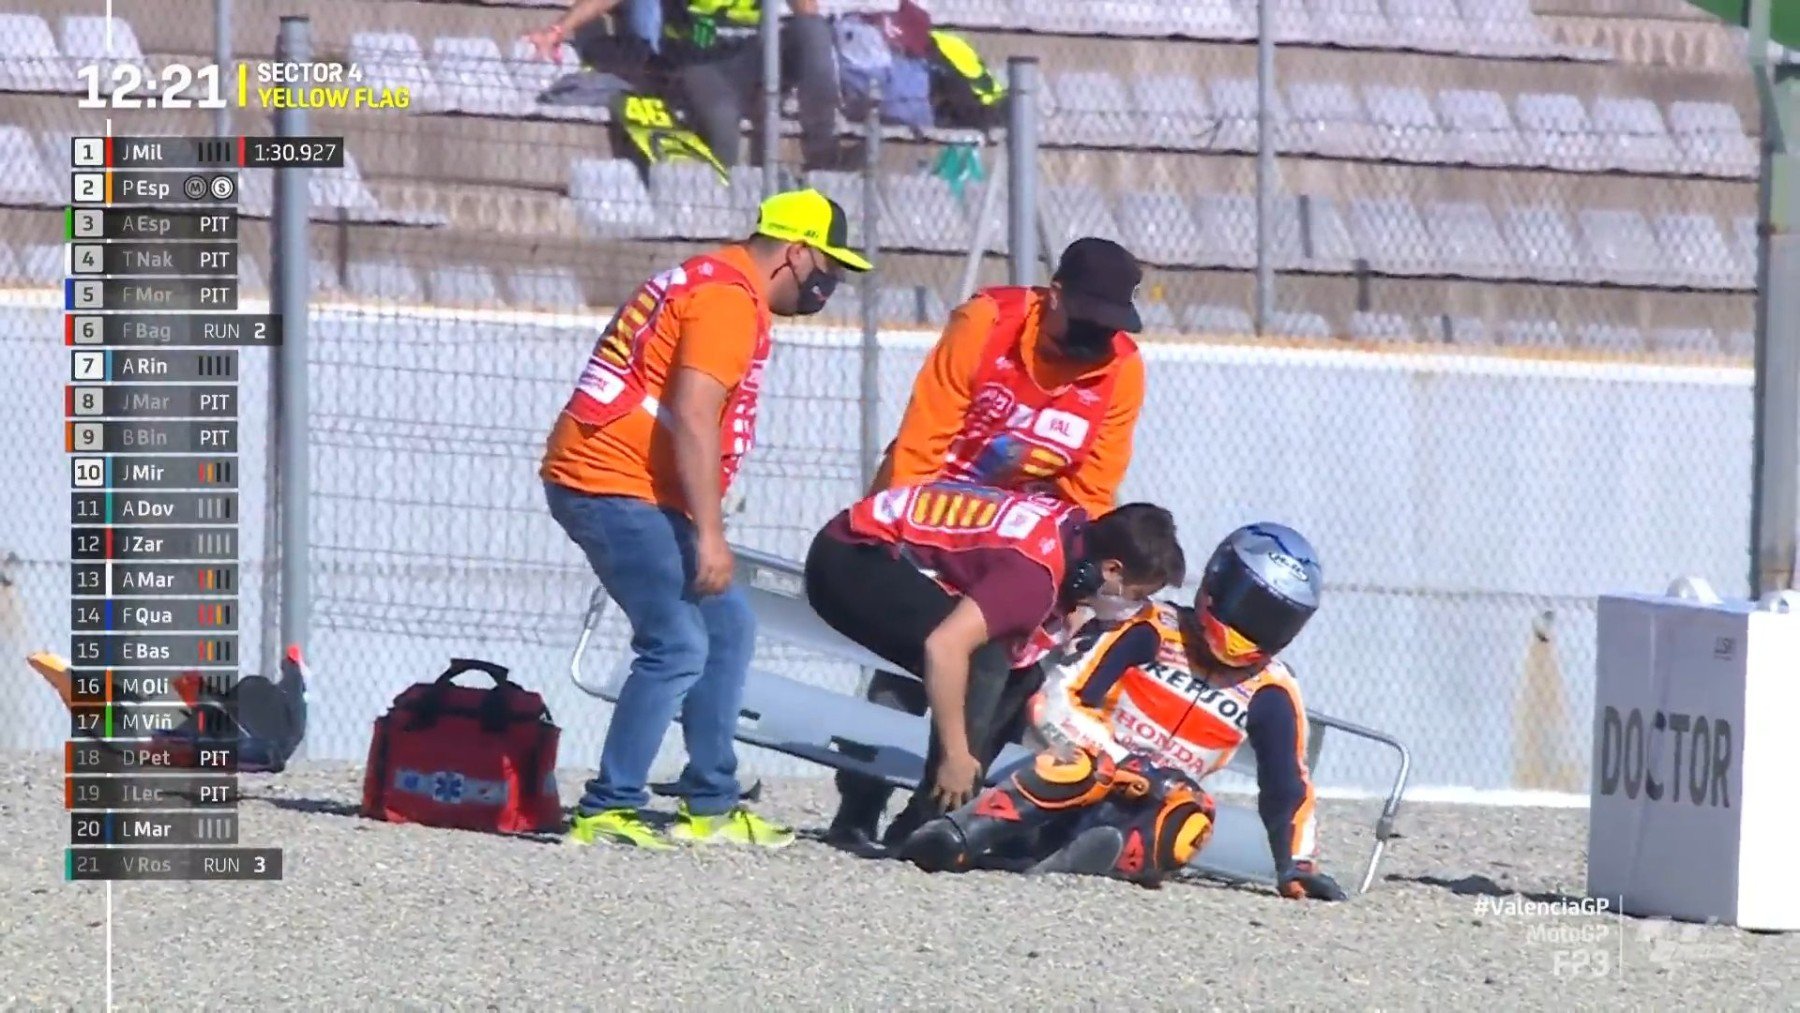 Pol Espargaró tras la caída en el GP de la Comunidad Valenciana de MotoGP. (Captura de pantalla)